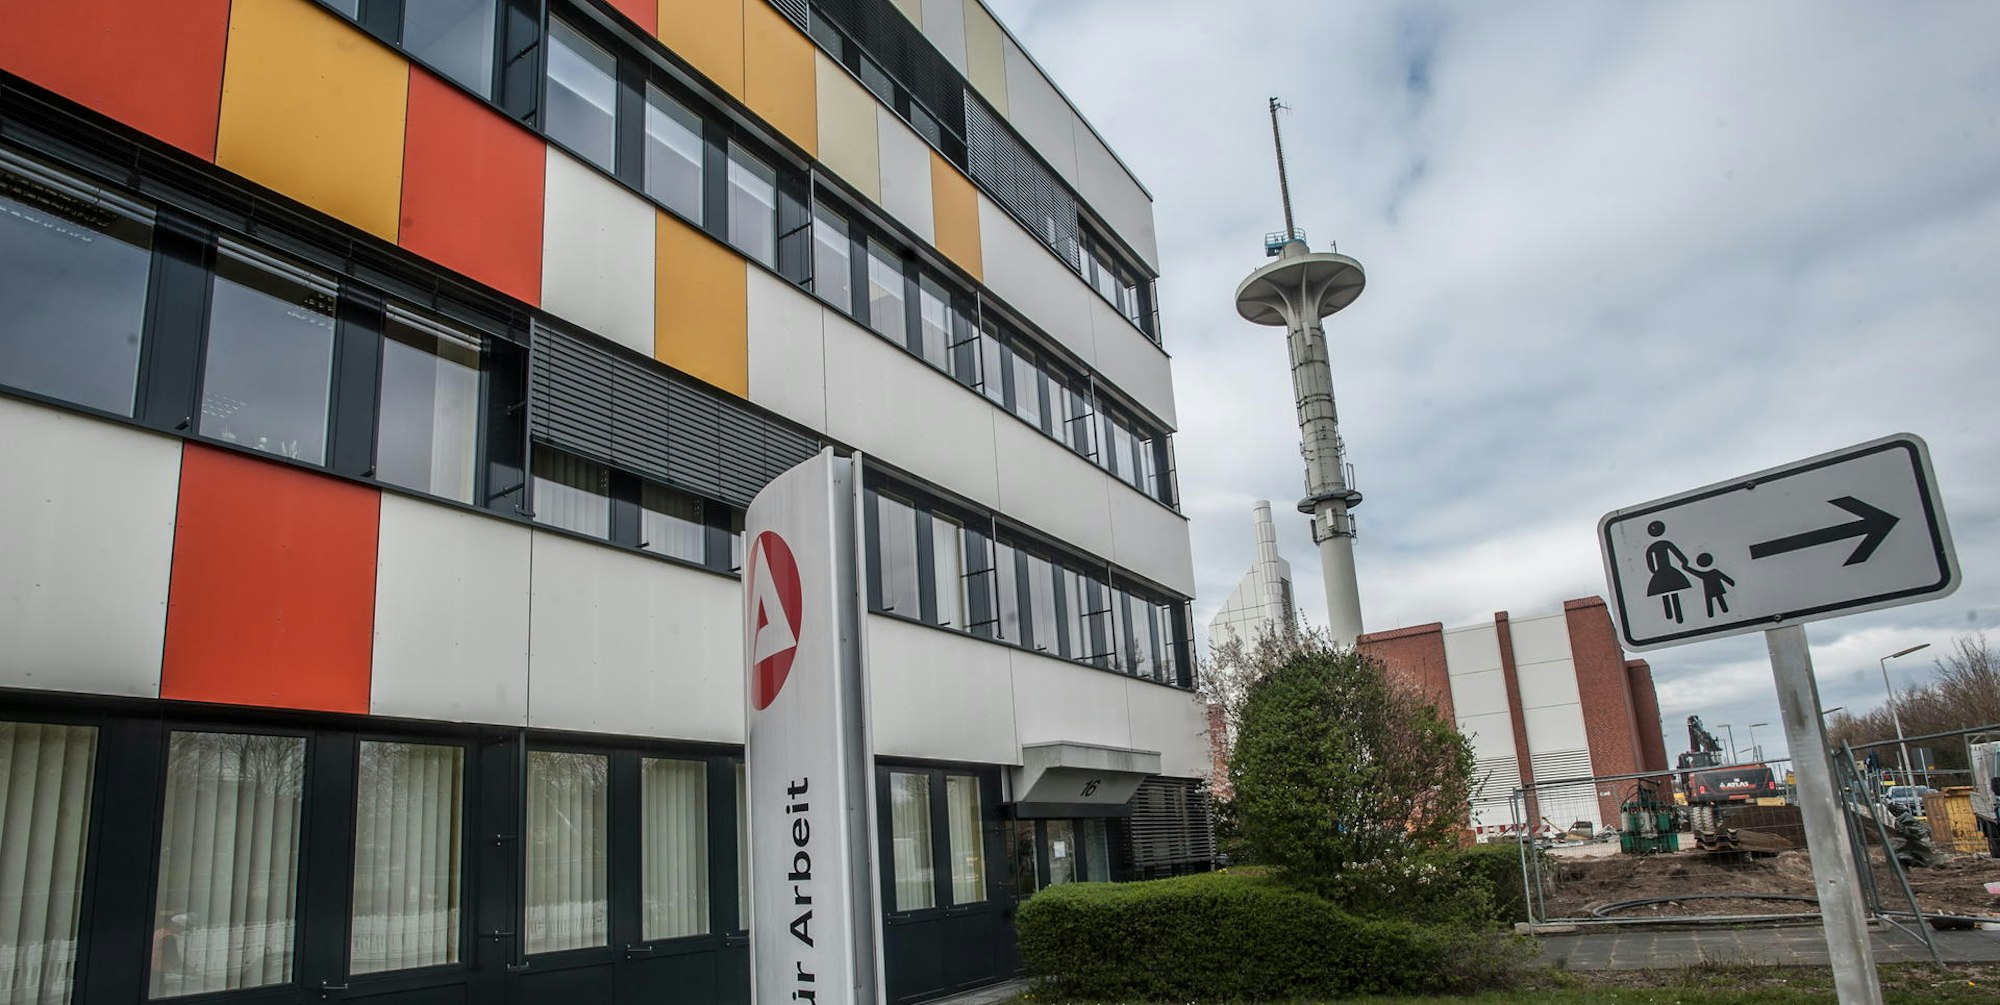 Agentur für Arbeit Leverkusen mit dem Telekom-Turm auf dem Postgelände im Hintergrund